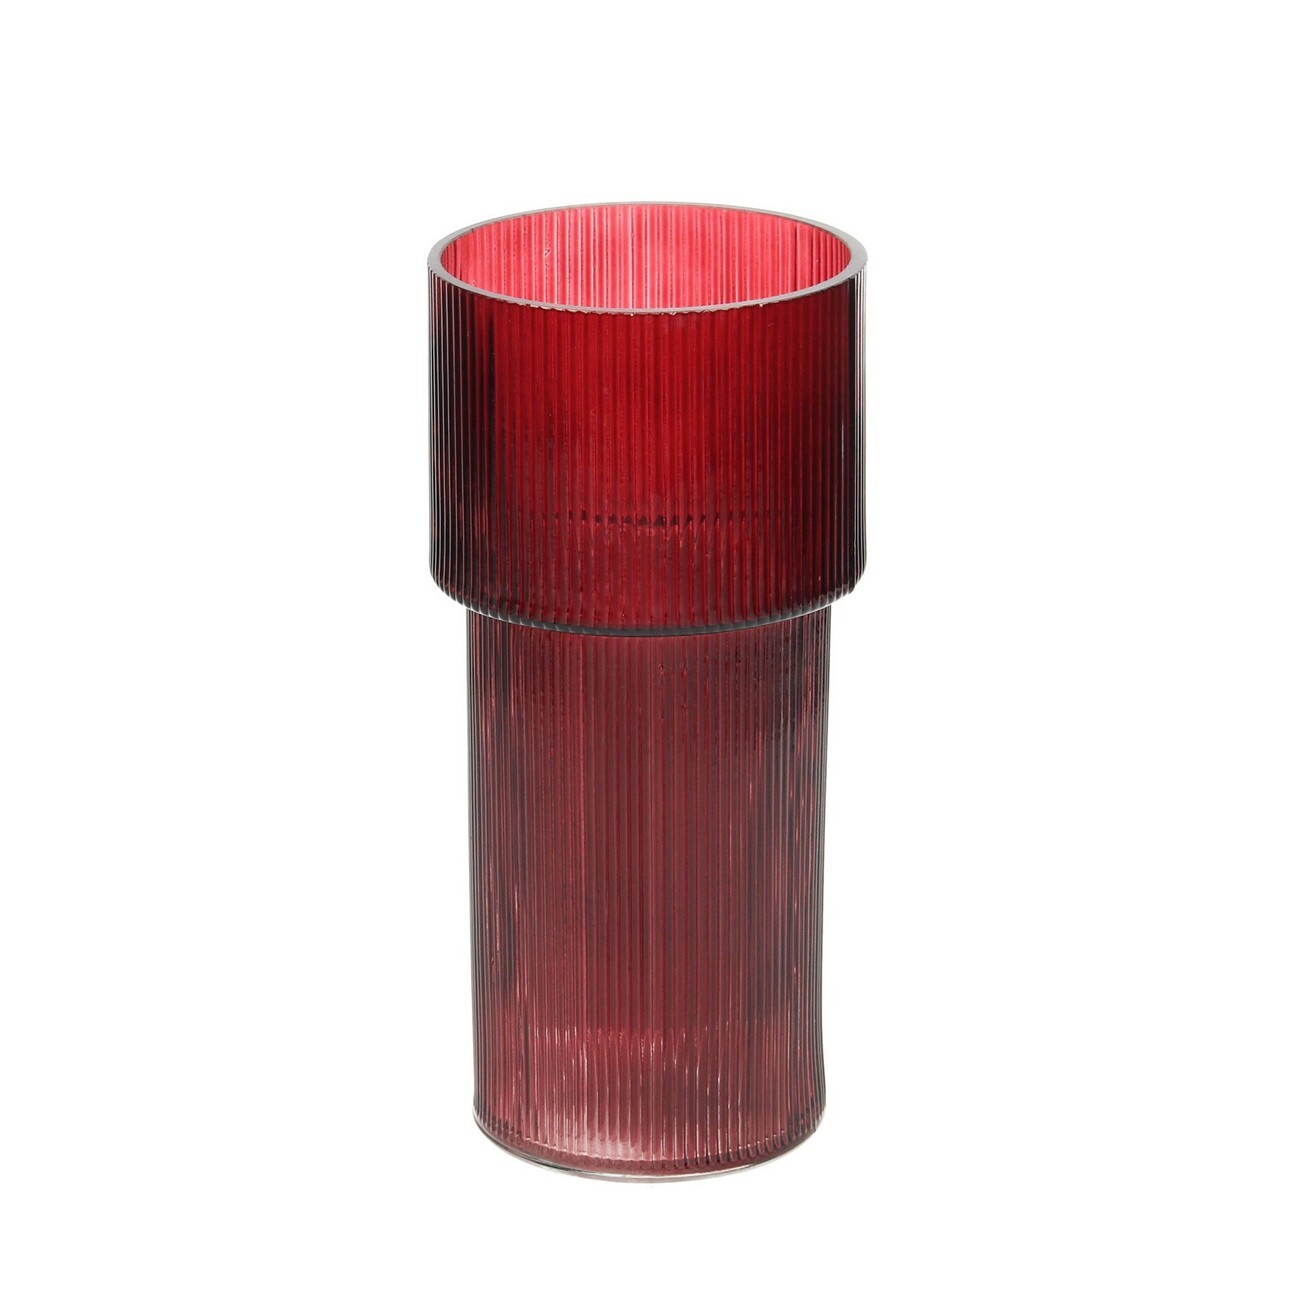 Vase Insie 23cm deep red, 11 x 11x 23 cm günstig online kaufen